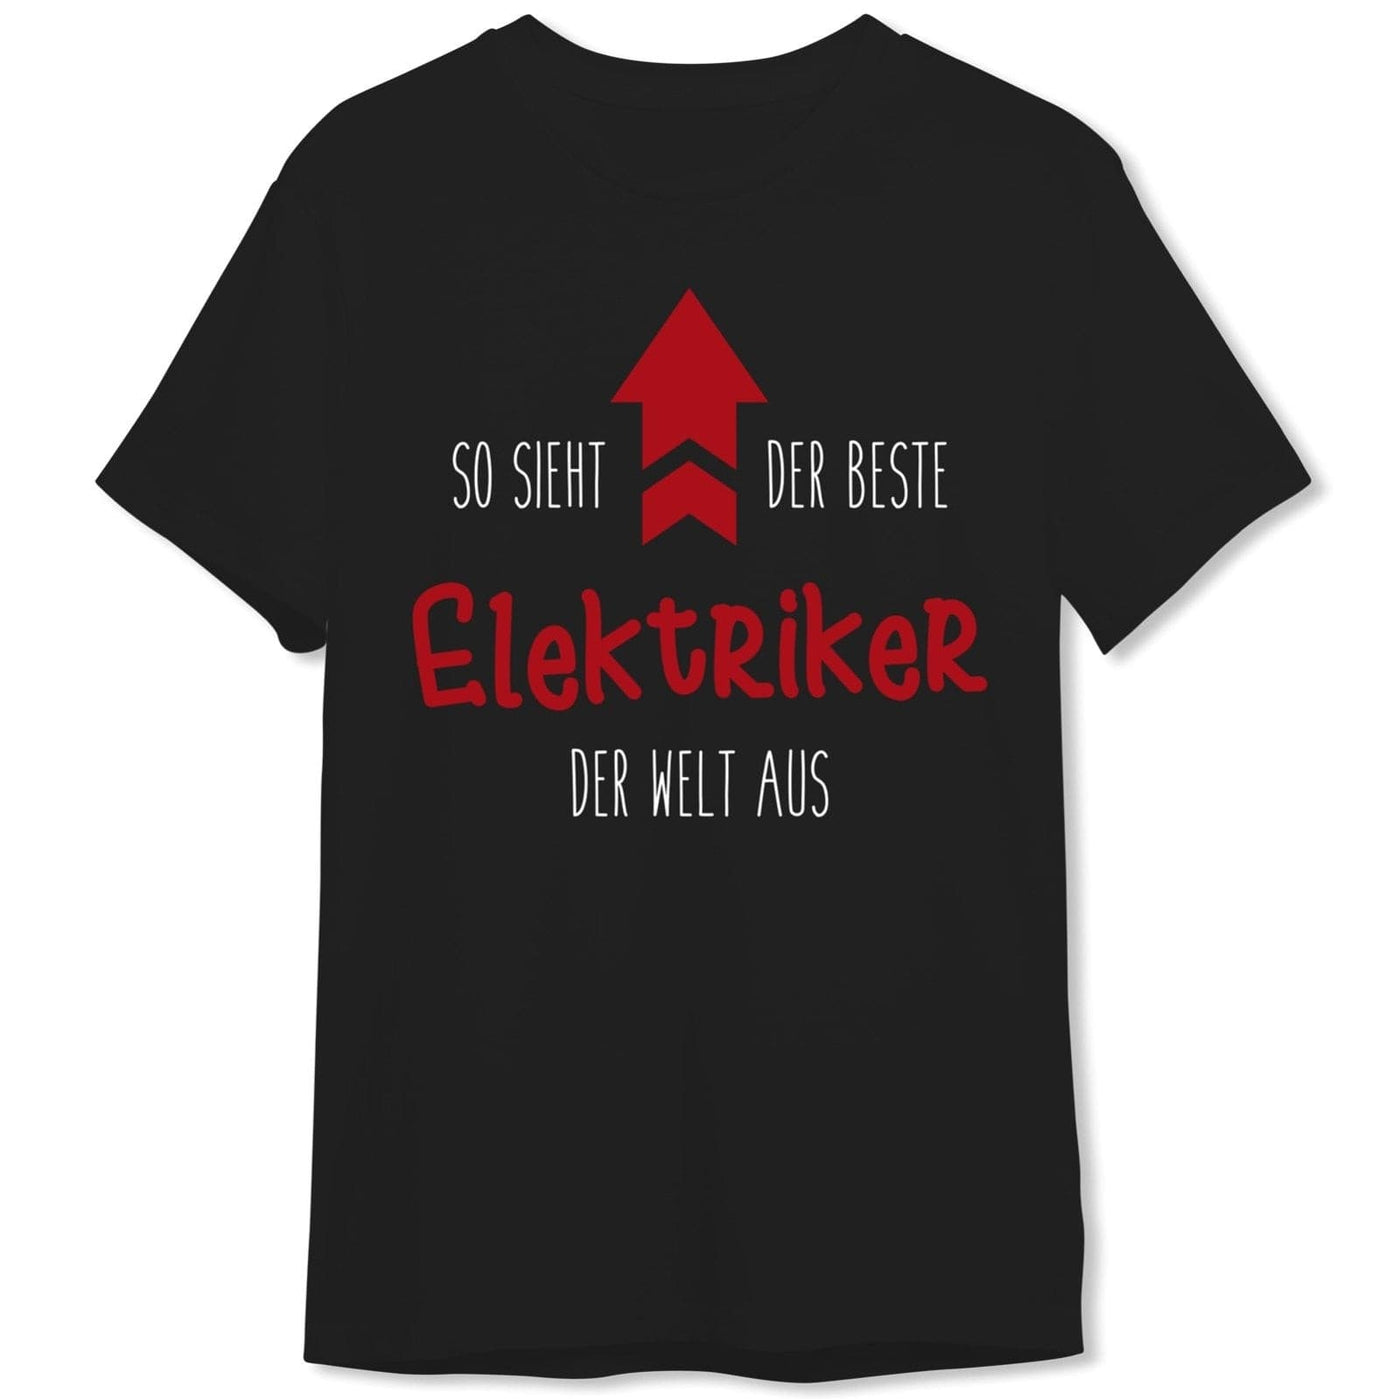 Bild: T-Shirt Herren - So sieht der beste Elektriker der Welt aus Geschenkidee